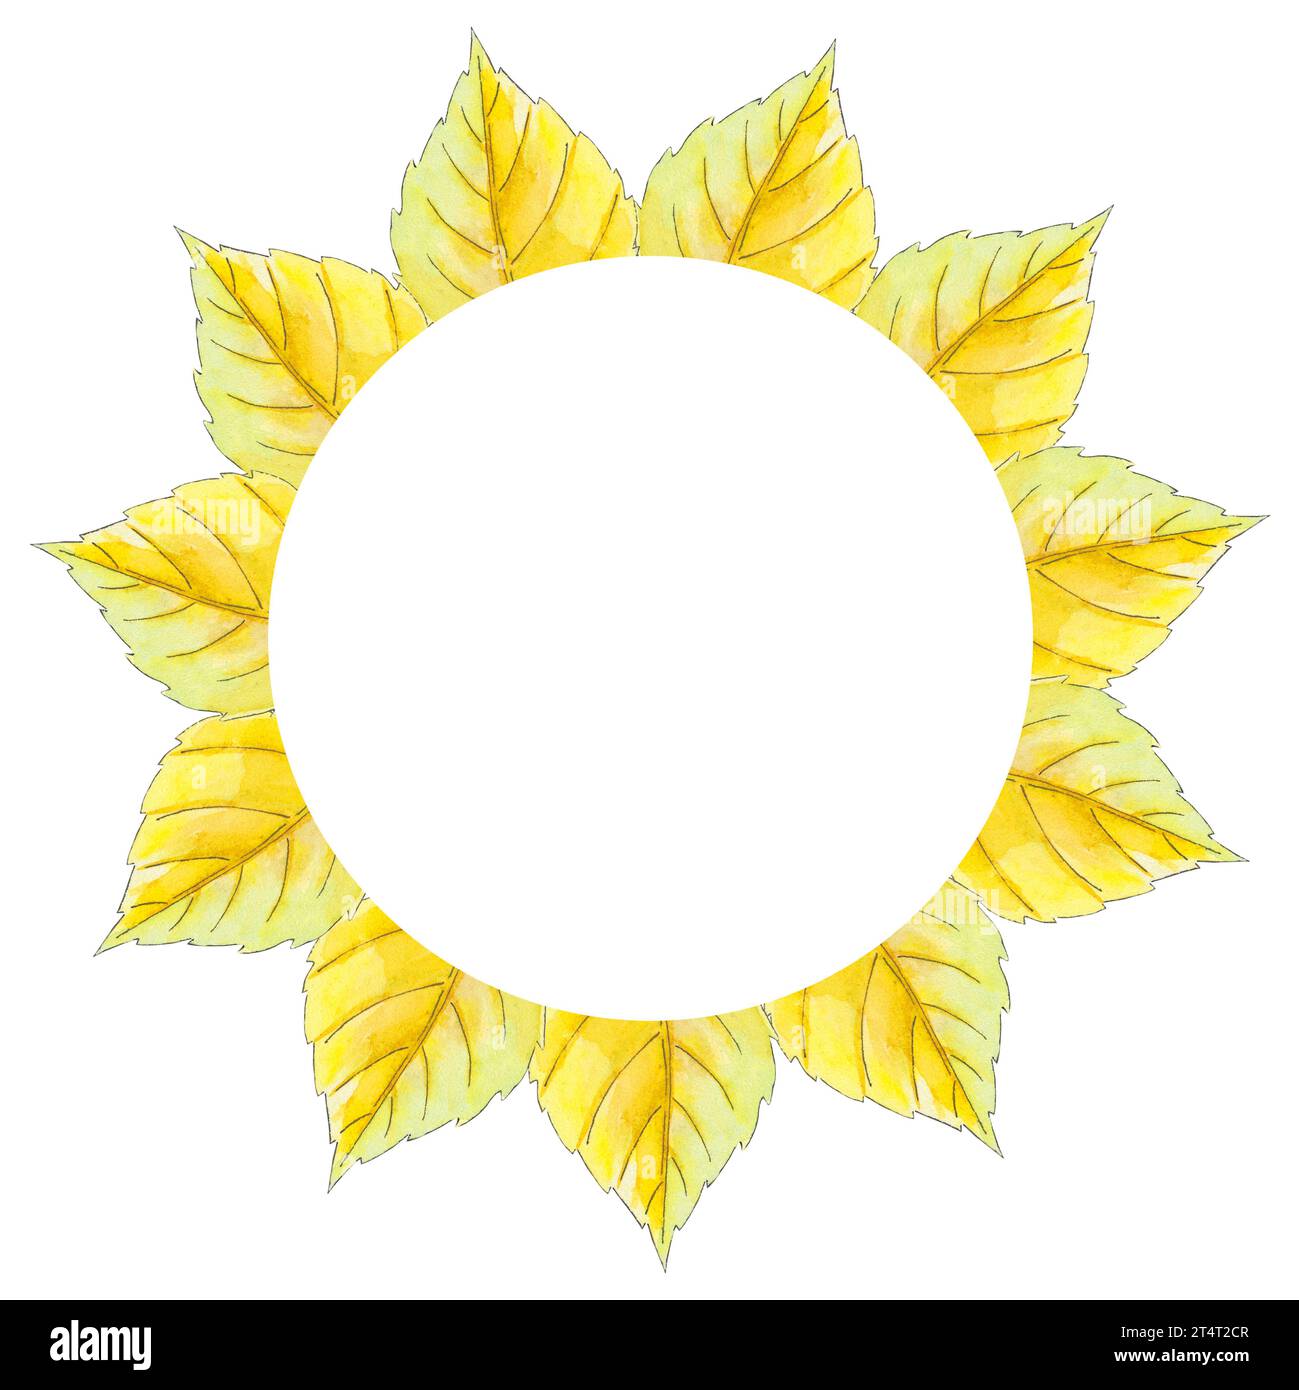 Cadre aquarelle avec tremble, feuilles de bouleau illustration d'automne sur fond blanc. Belle carte postale botanique colorée. Art pour carte de conception, logo Banque D'Images